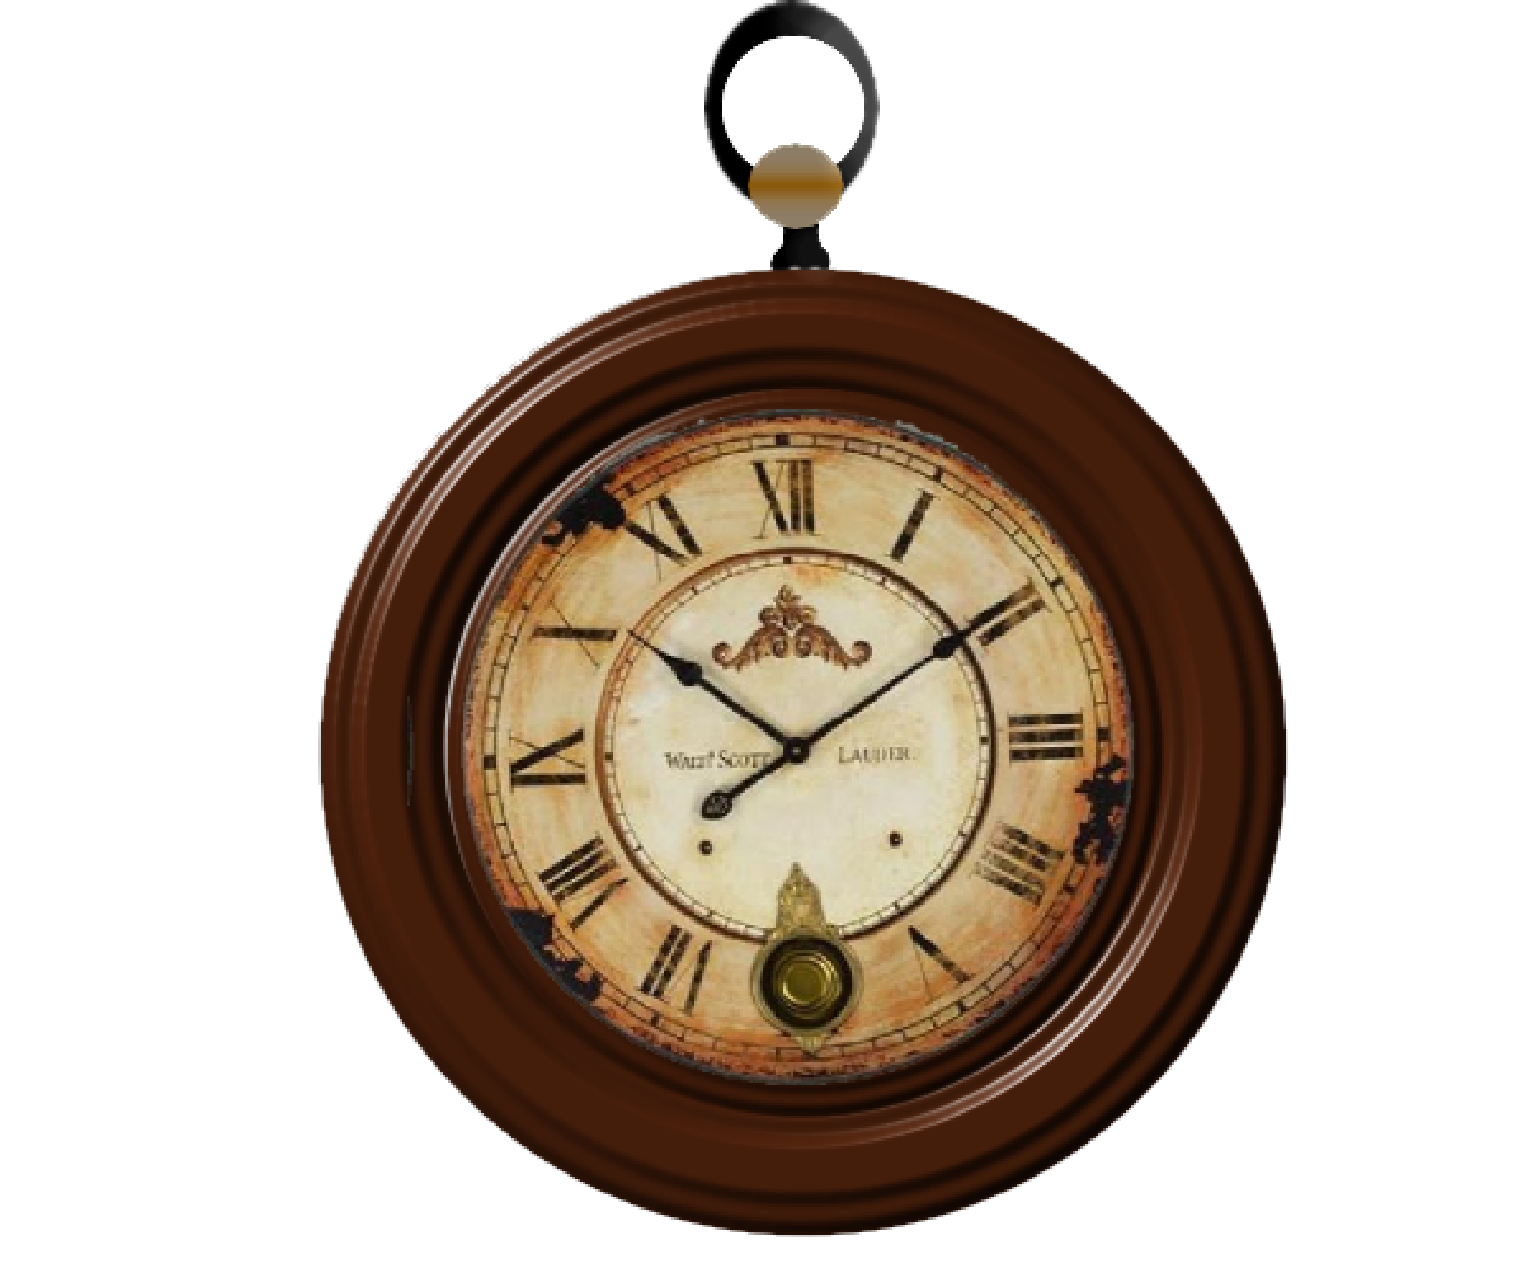 Vintage Clock Image PNG Image